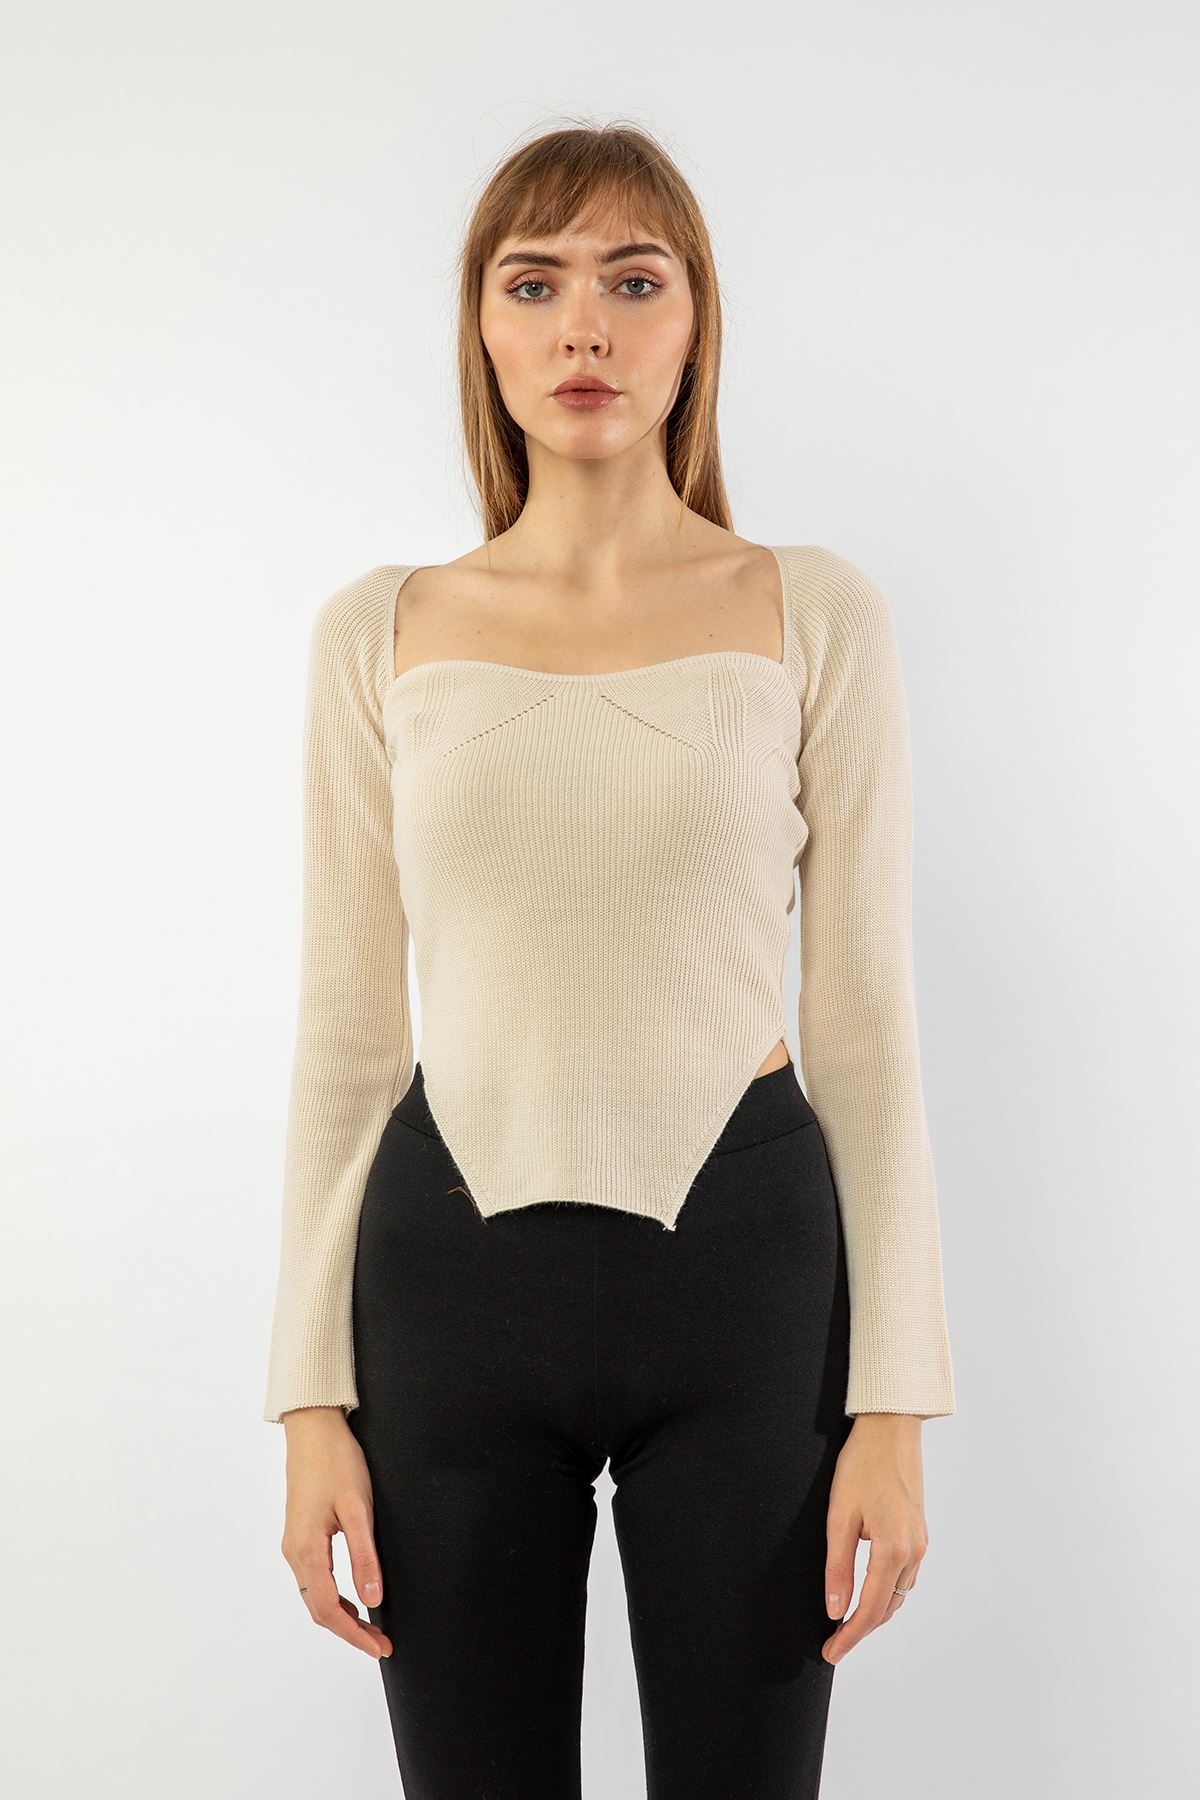 Knitwear Fabric Queen Anna Neck Short Tight Fit Asymmetric Women Sweater - Ecru